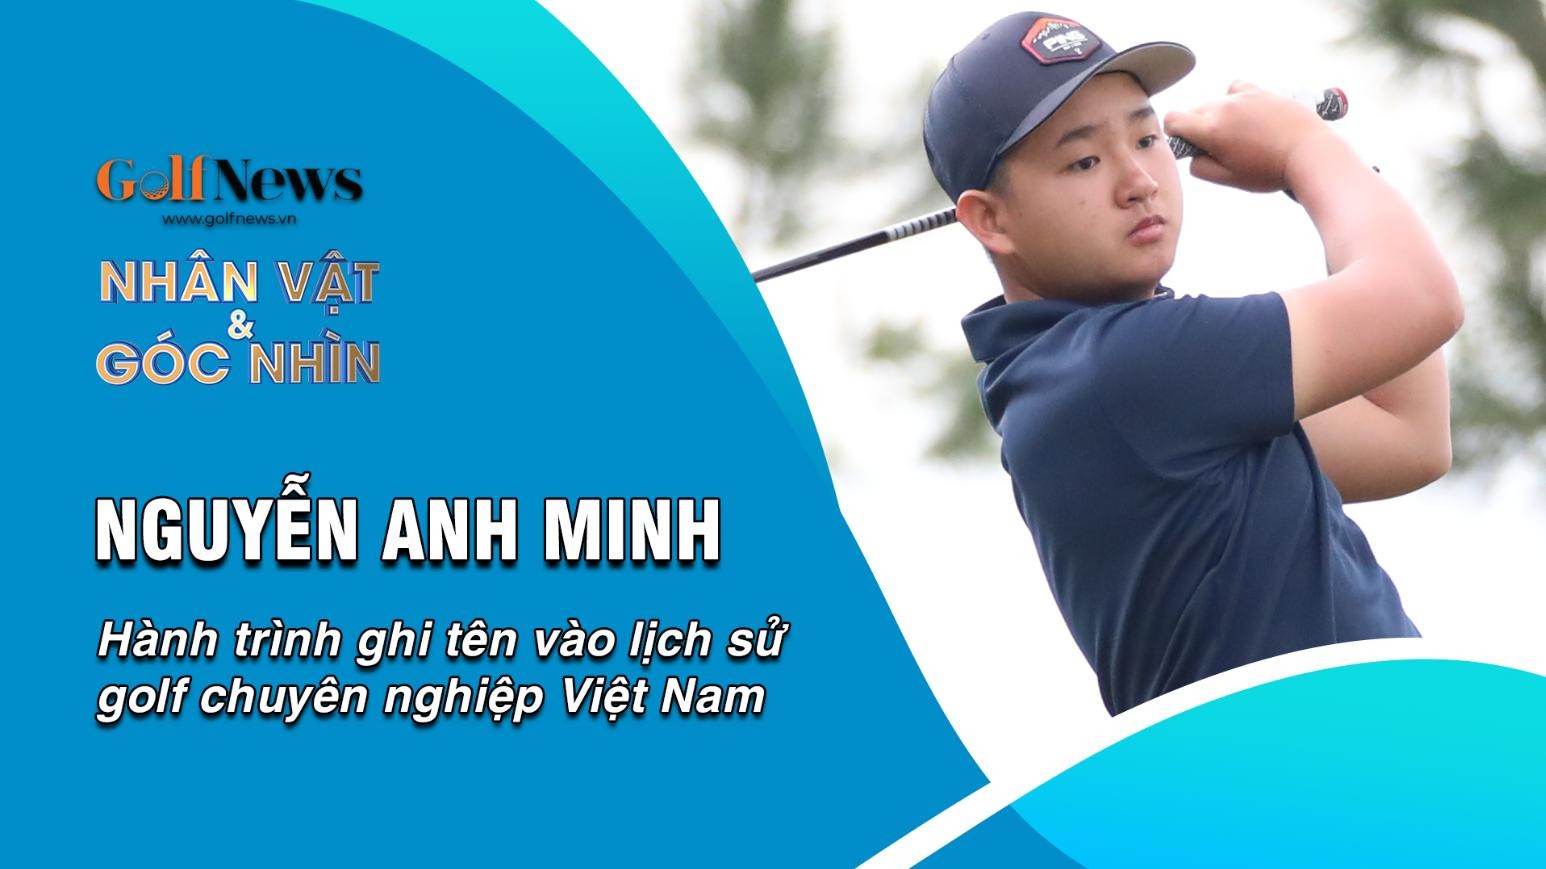 Nguyễn Anh Minh và hành trình ghi tên vào lịch sử golf chuyên nghiệp Việt Nam